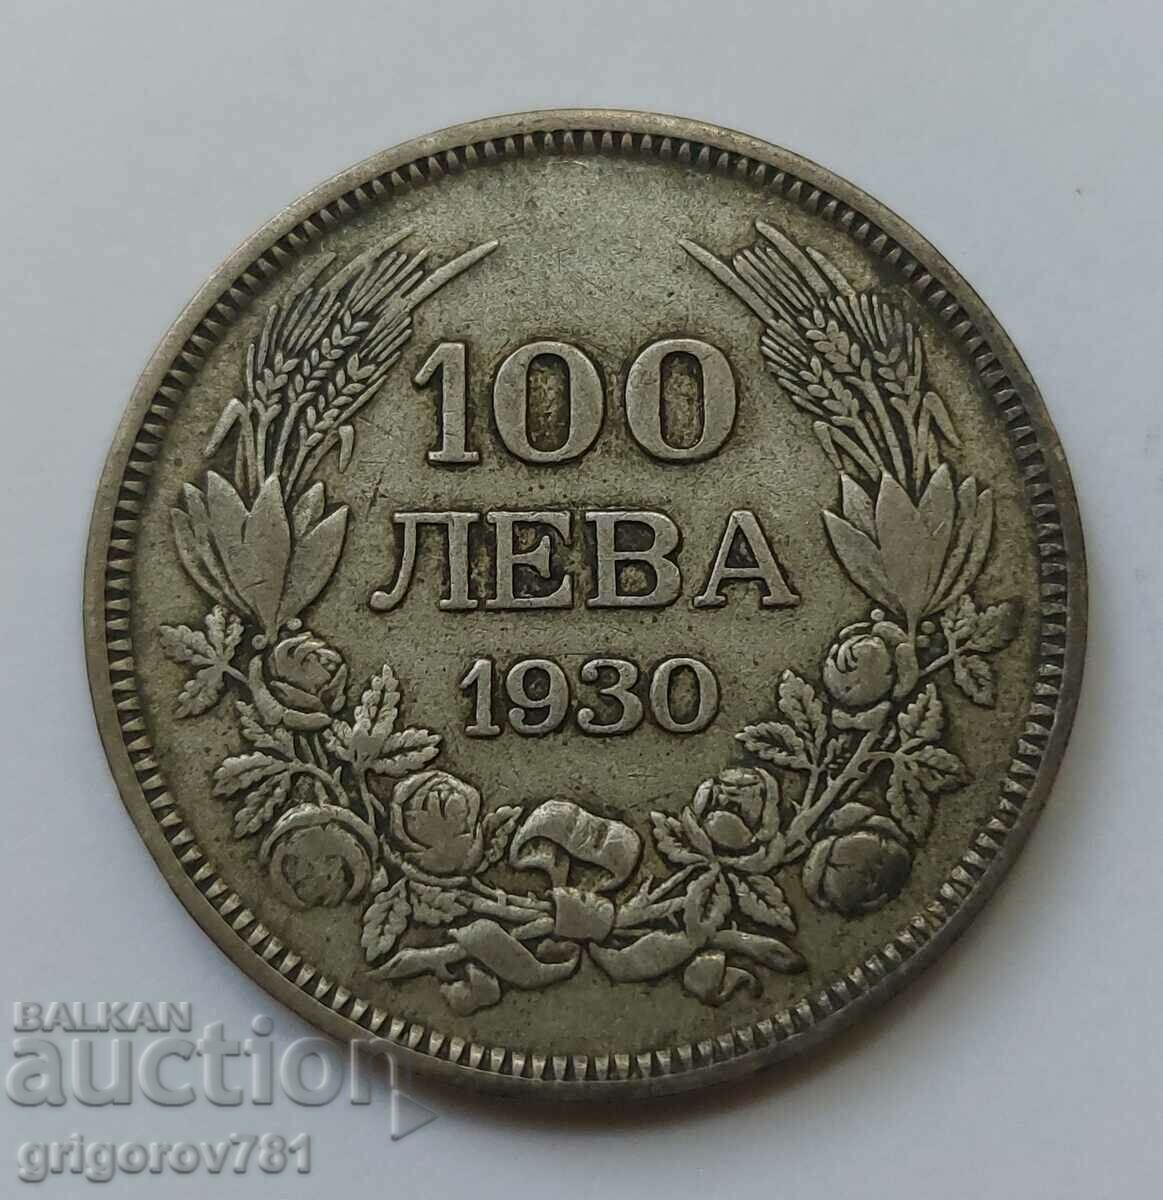 Ασήμι 100 λέβα Βουλγαρία 1930 - ασημένιο νόμισμα #3